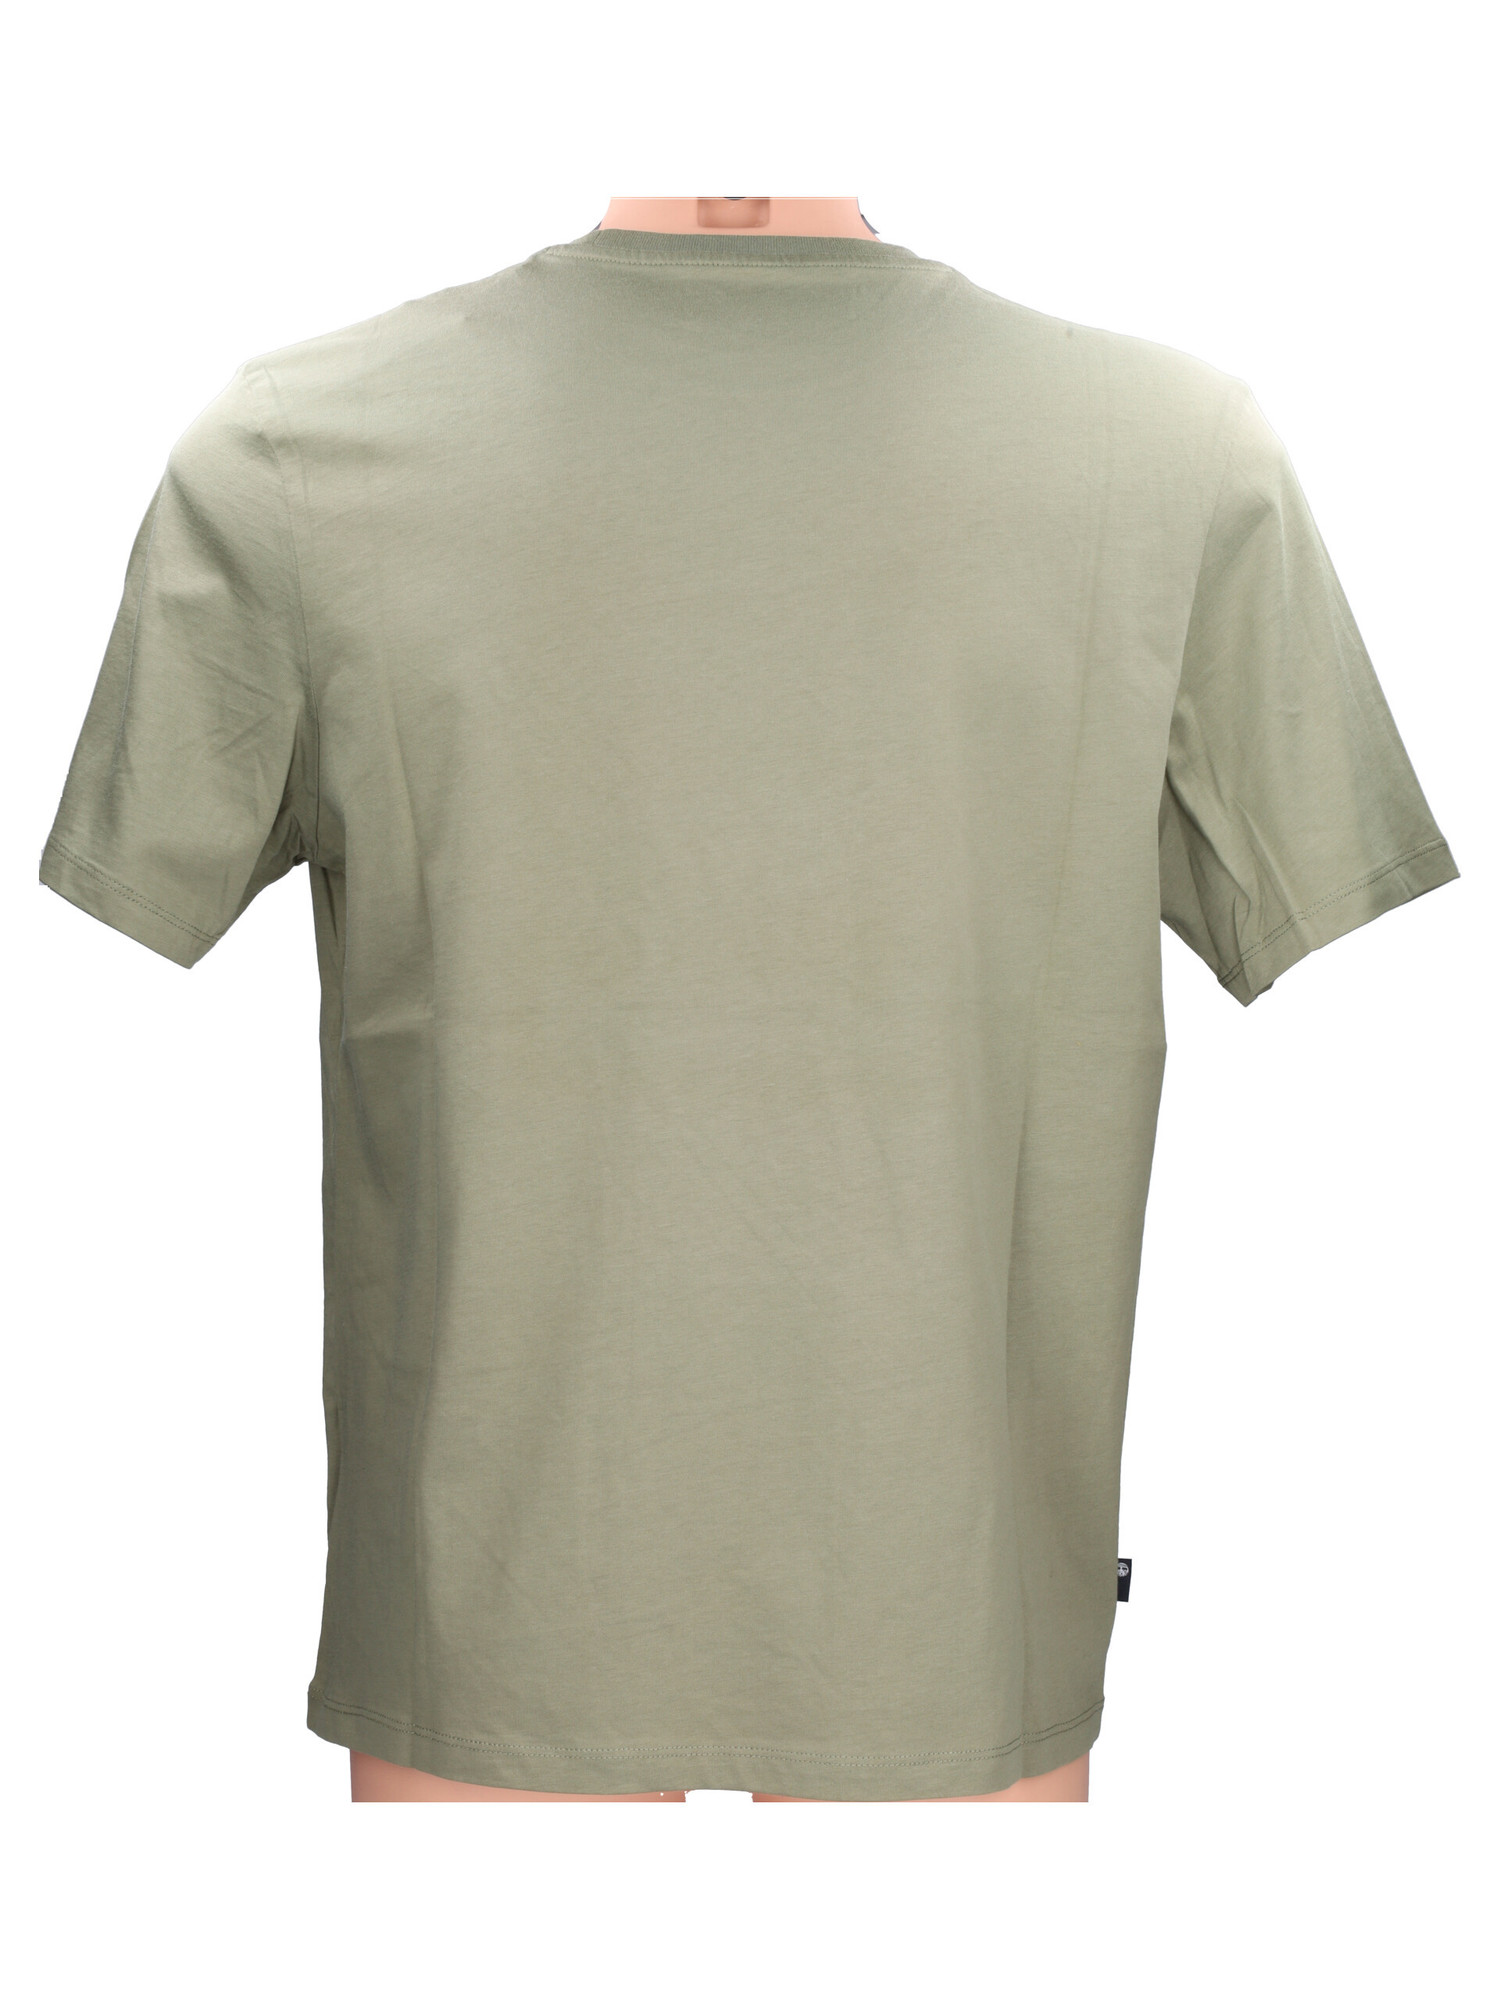 t-shirt-a-maniche-corte-timberland-da-uomo-verde-a617f8